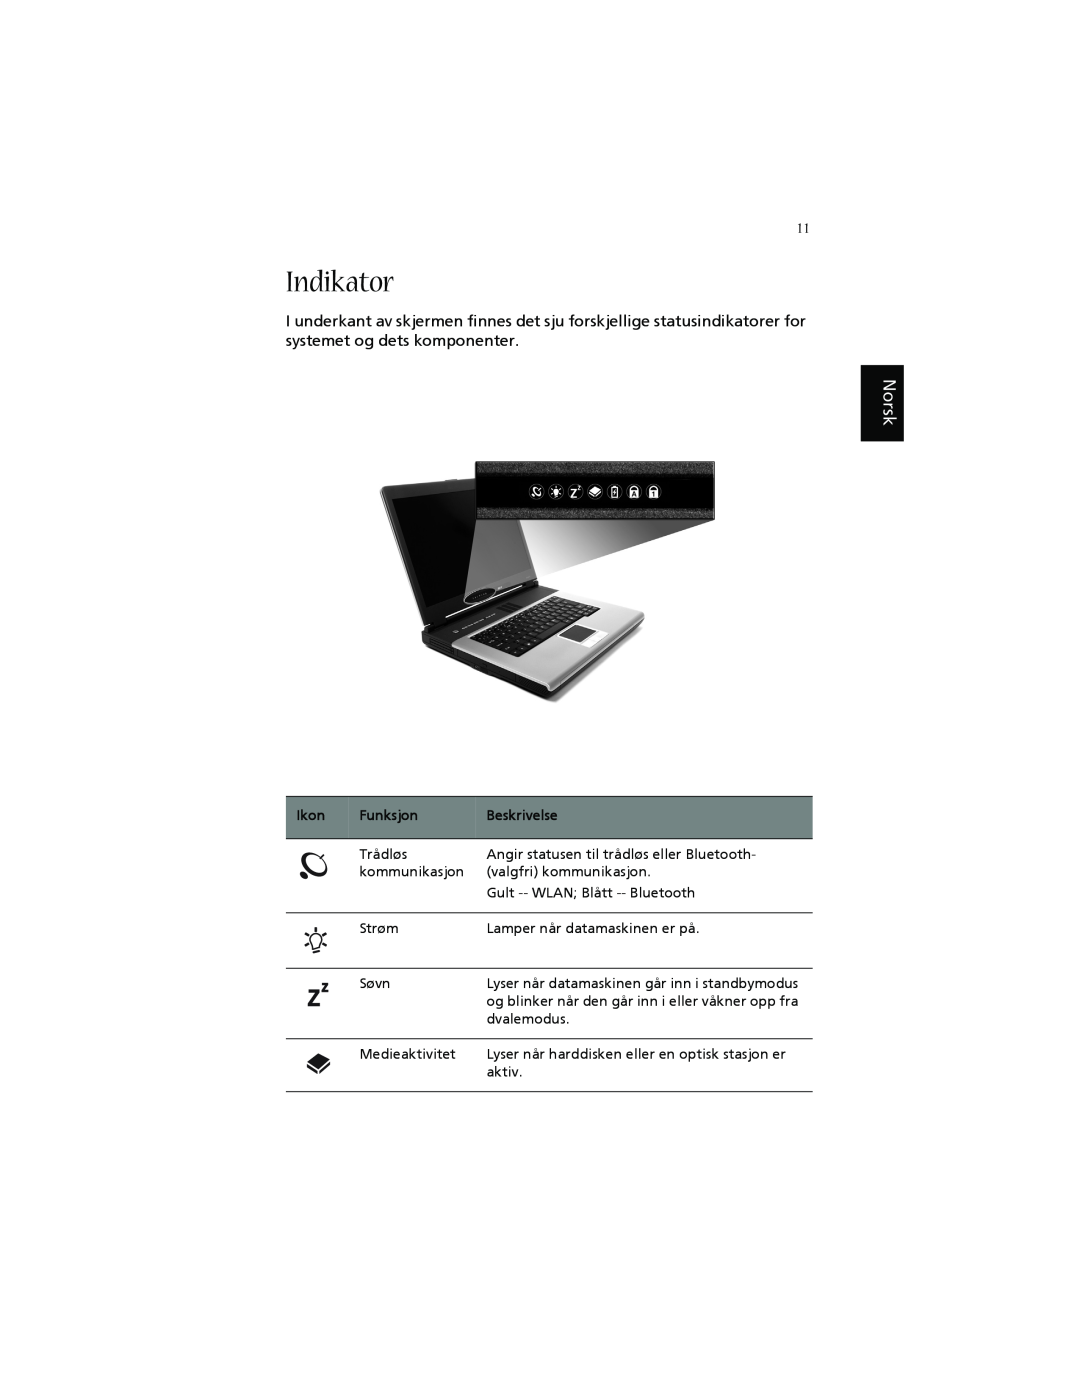 Acer 1660 manual Indikator, Norsk, Ikon, Funksjon, Beskrivelse 